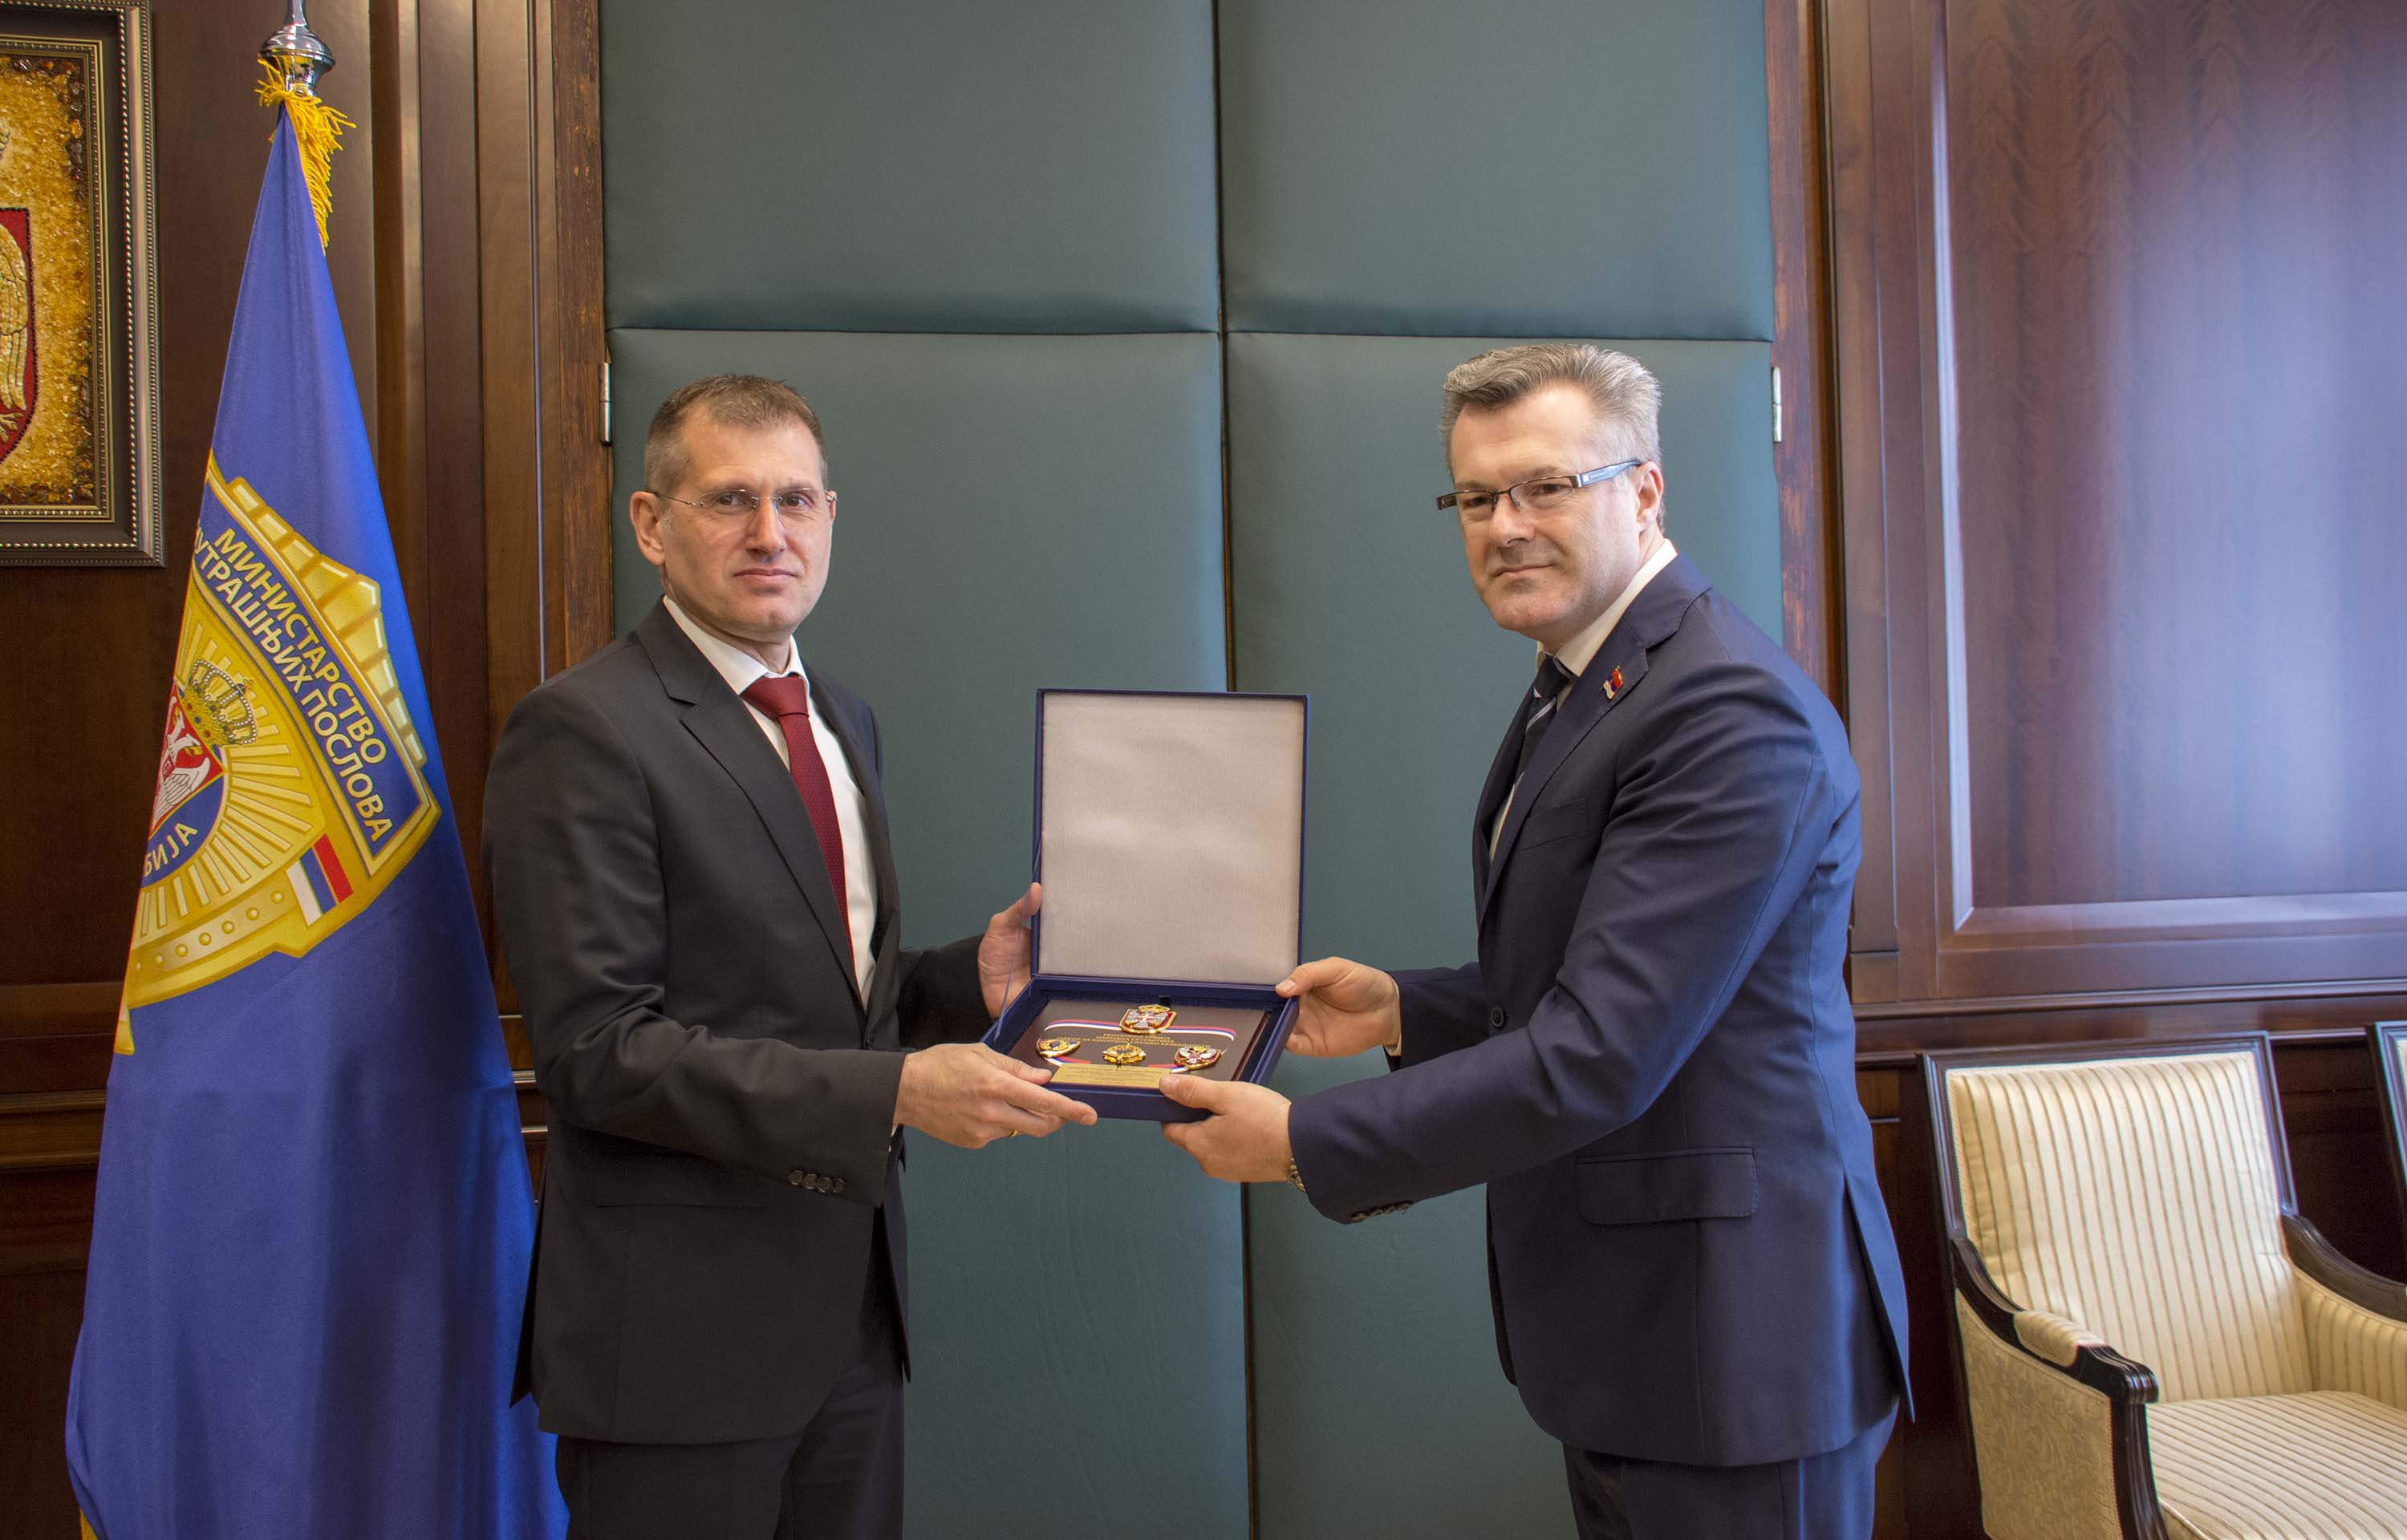 Ministar Stefanović primio plaketu Odbora za kontrolu službi bezbednosti Narodne skupštine